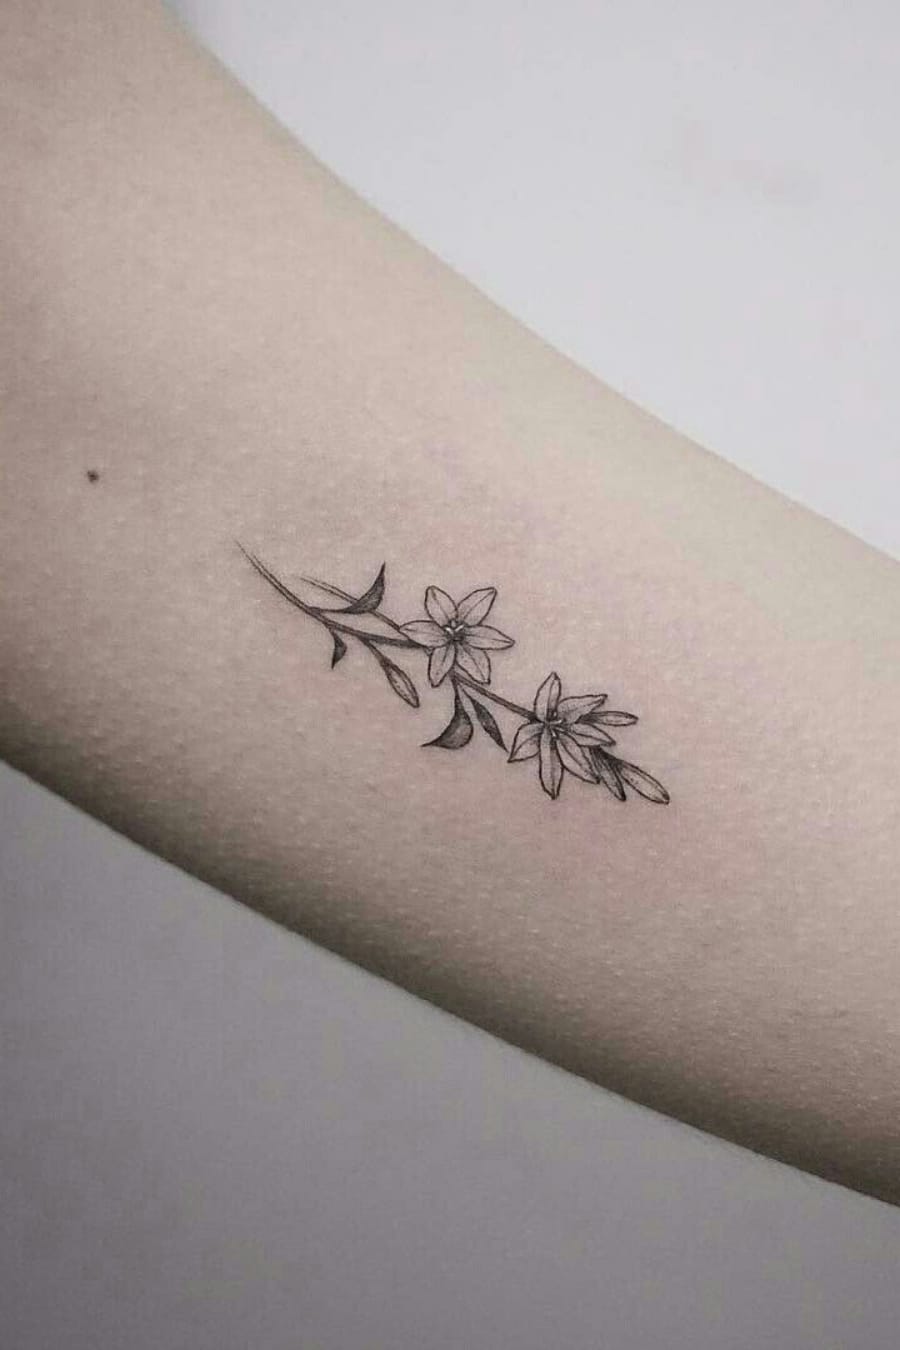 Small lily tattoo